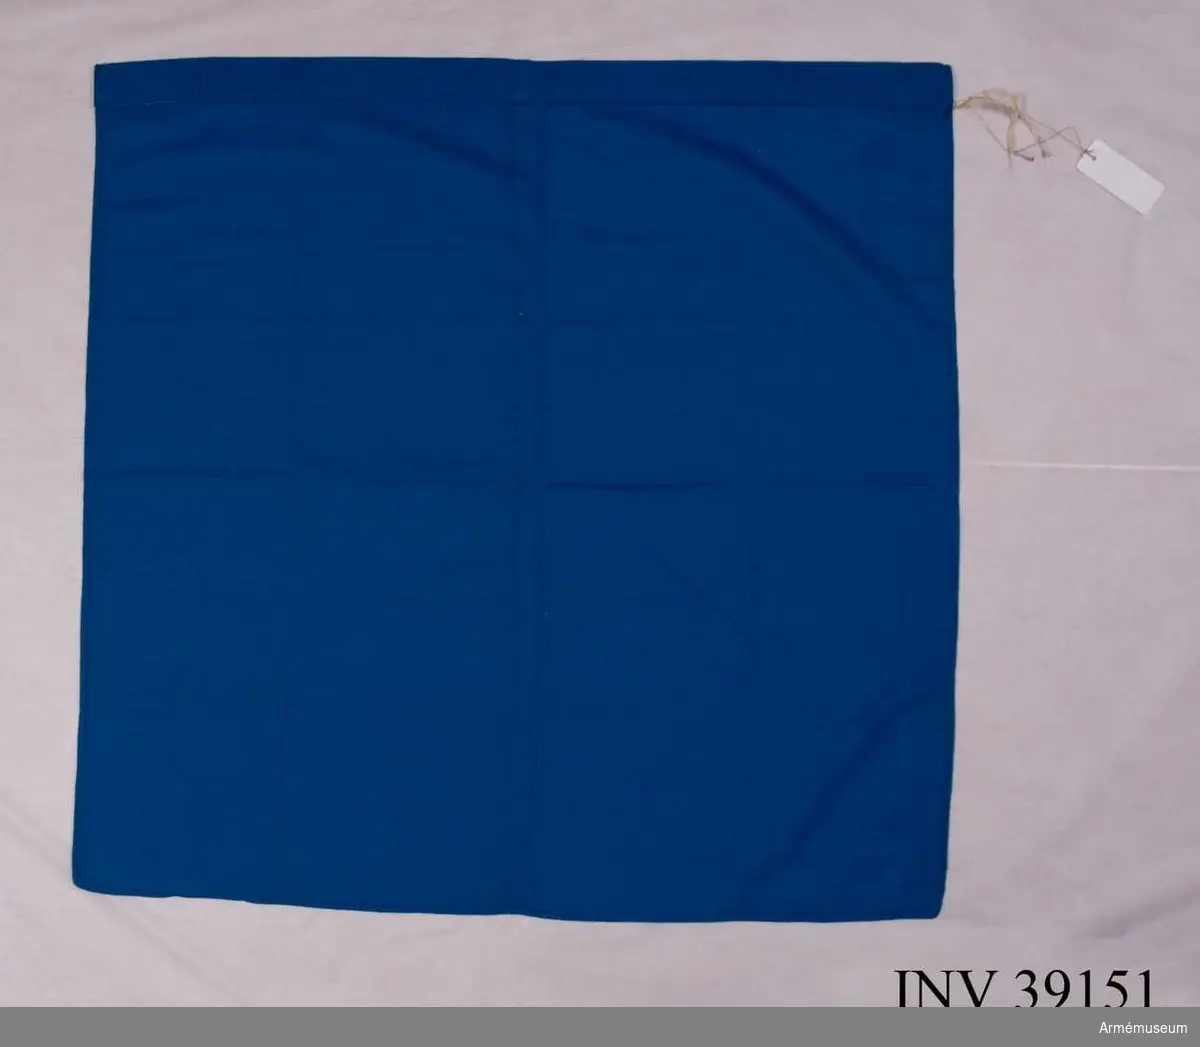 Grupp H III.

Av blå flaggduk utan dekor (märke). Upptill på längre sidan en kanal för stång.